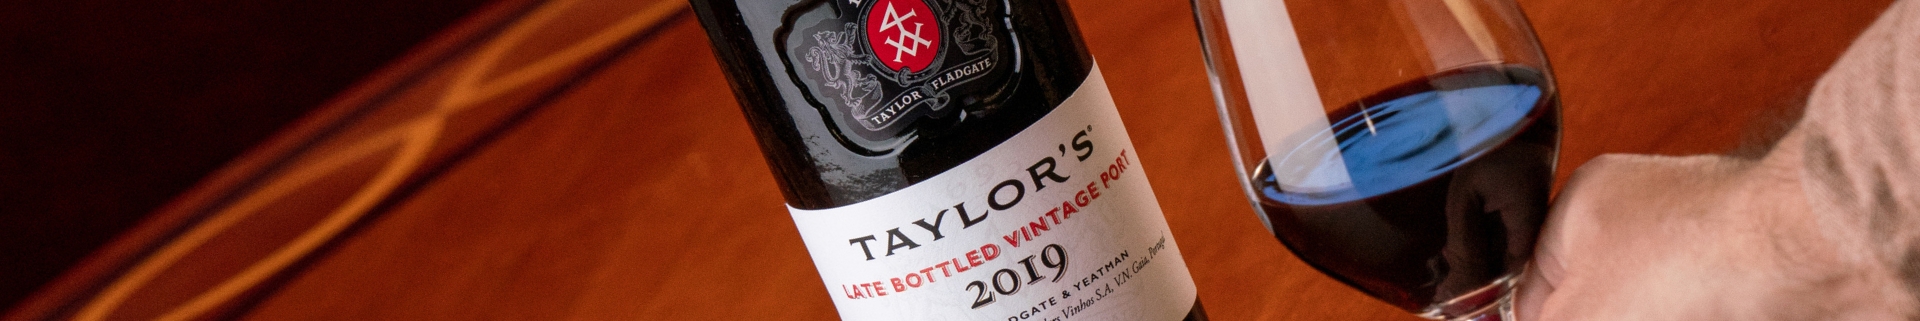 El Late Bottled Vintage, o LBV, es el estilo de vino de Oporto de calidad más popular tanto en Inglaterra como en Canadá - representa...